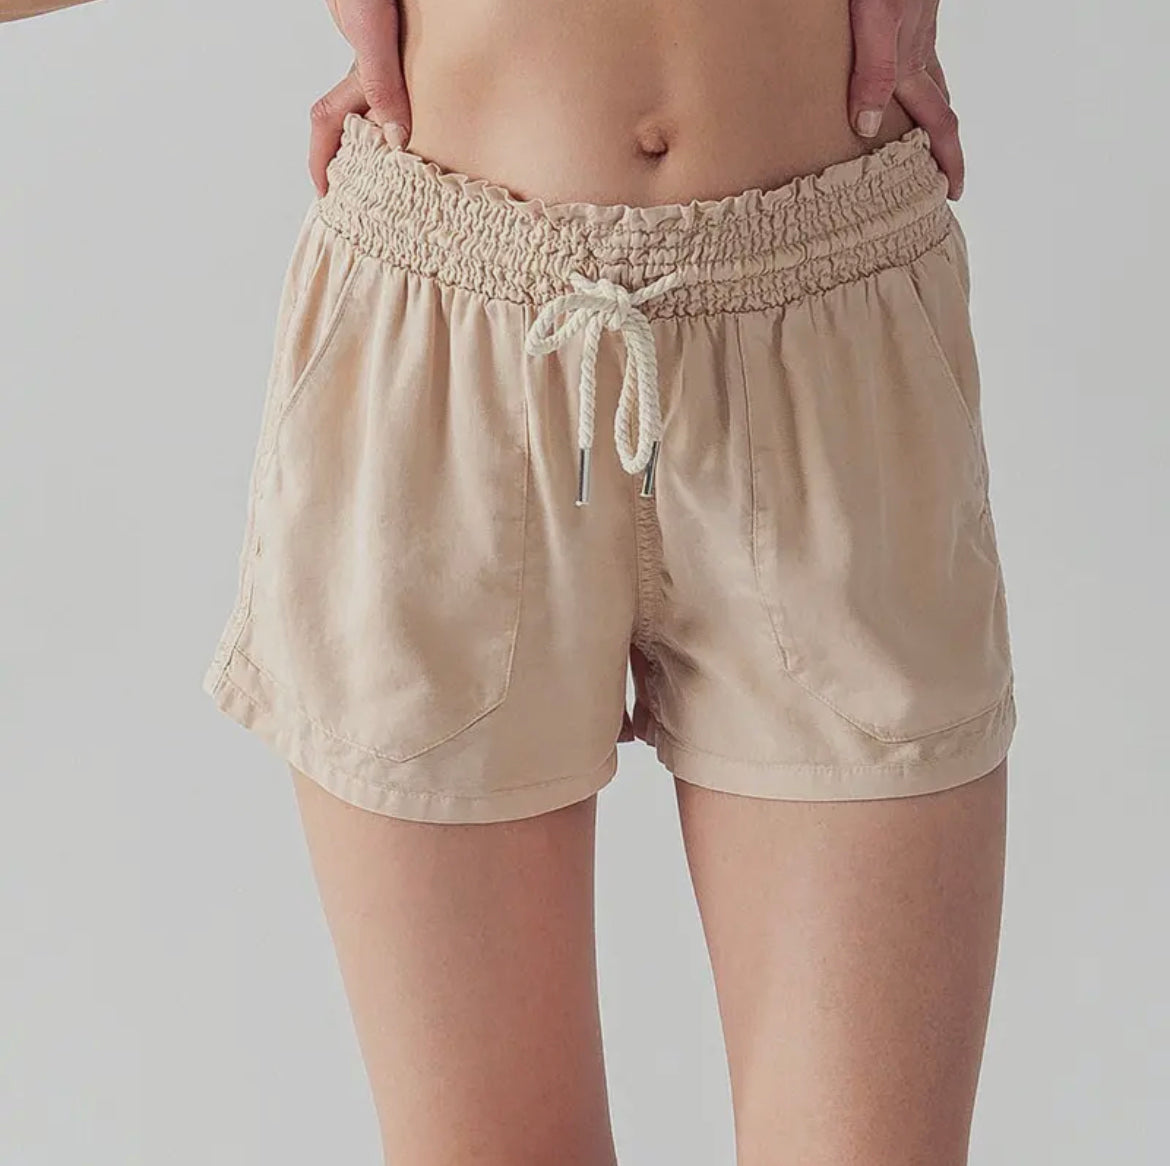 Cali girl shorts